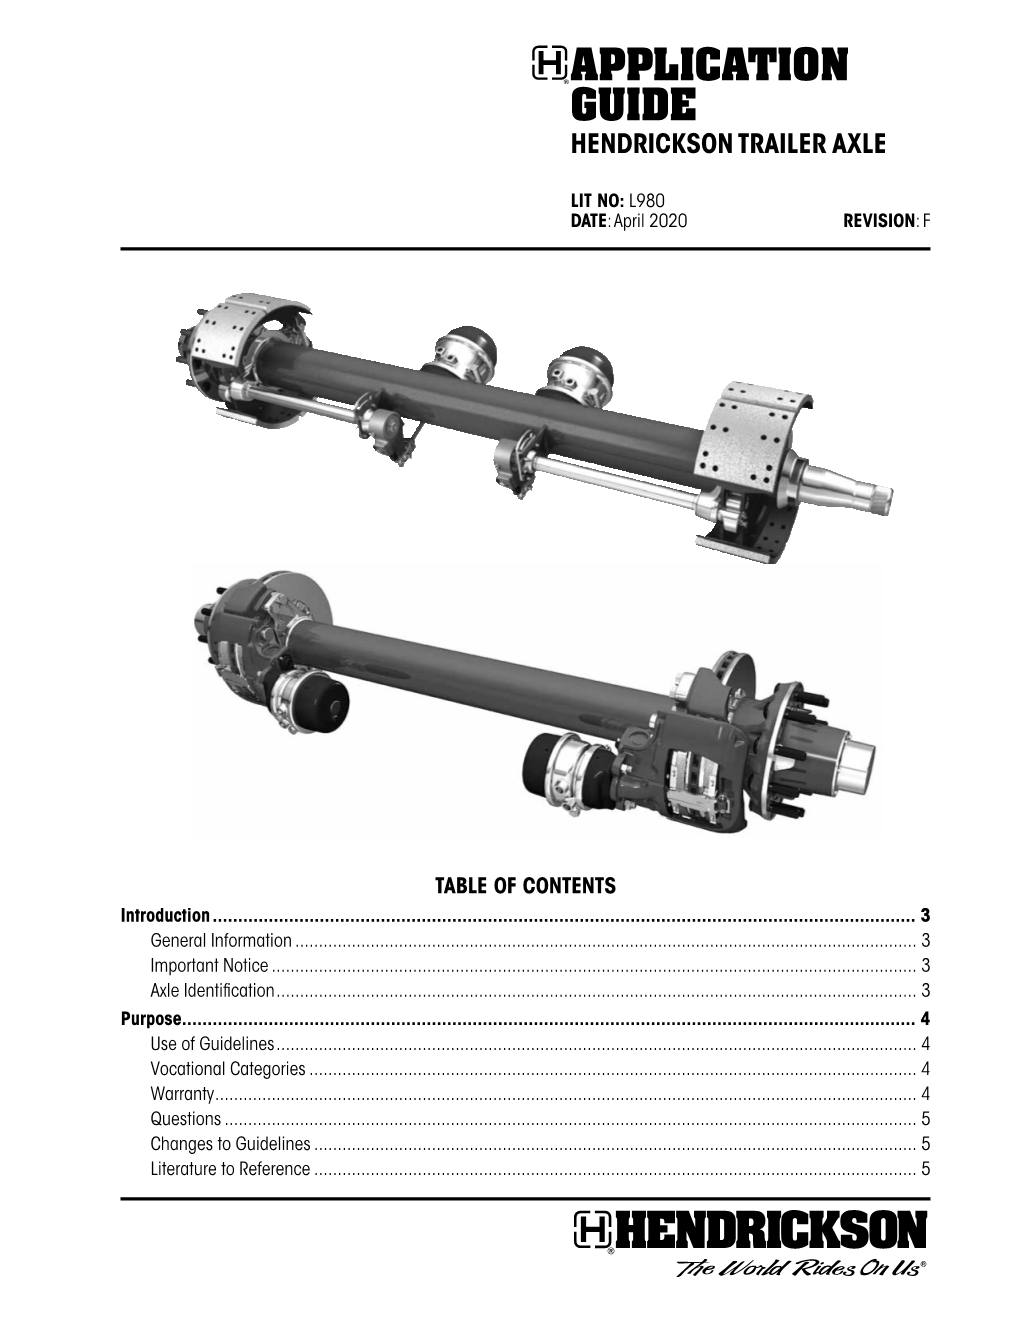 L980 Hendrickson Trailer Axle Application Guide